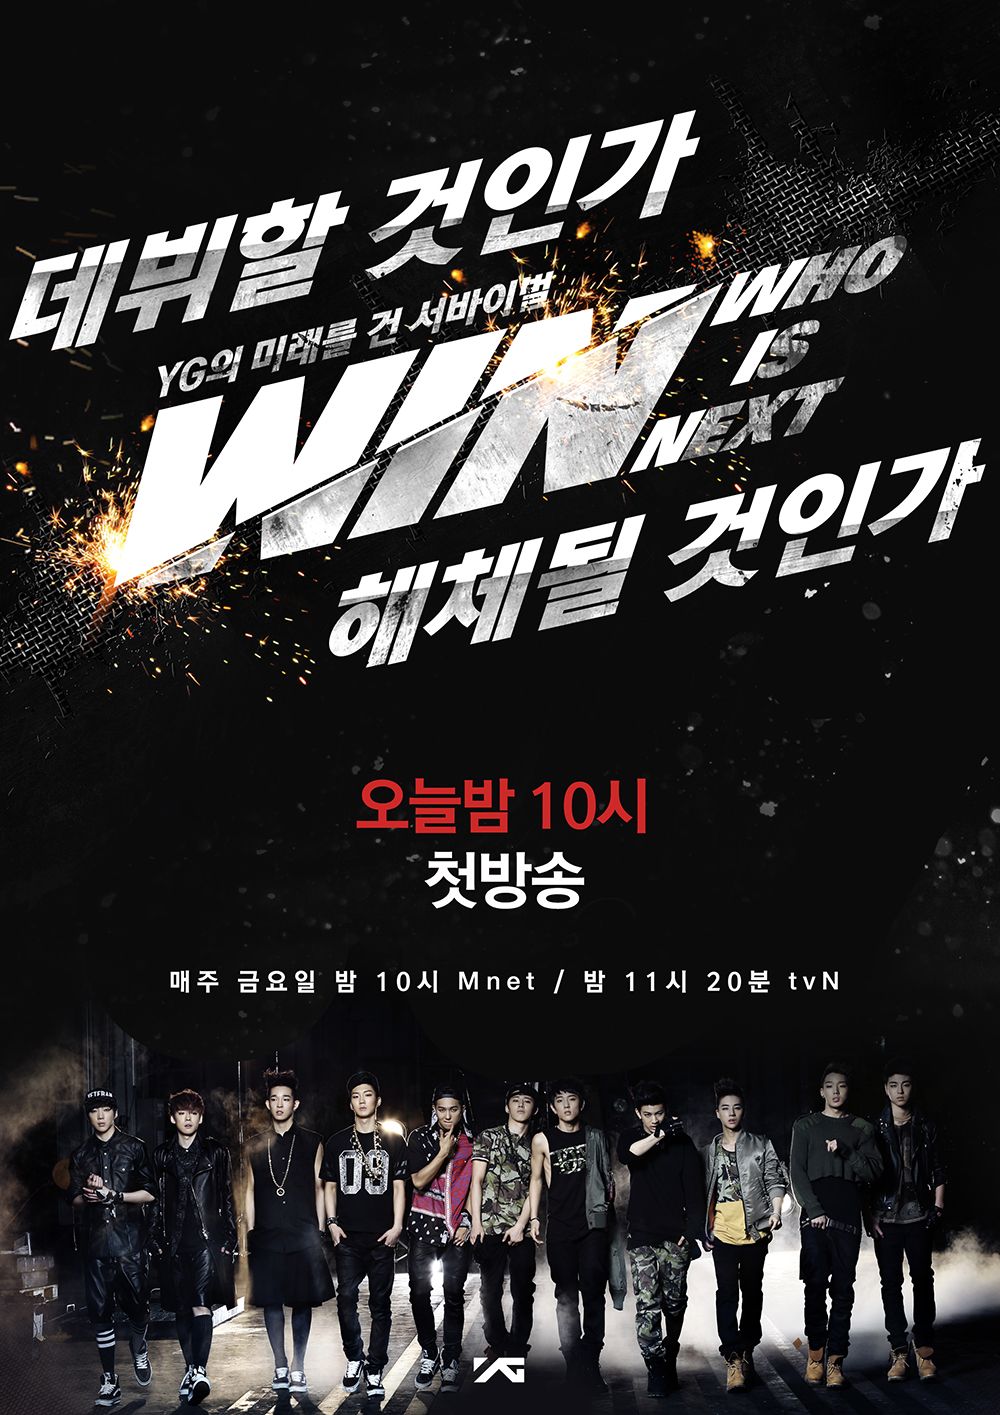 chương trình sống còn Win: Who is next? để debut nhóm nam tiếp theo của YG